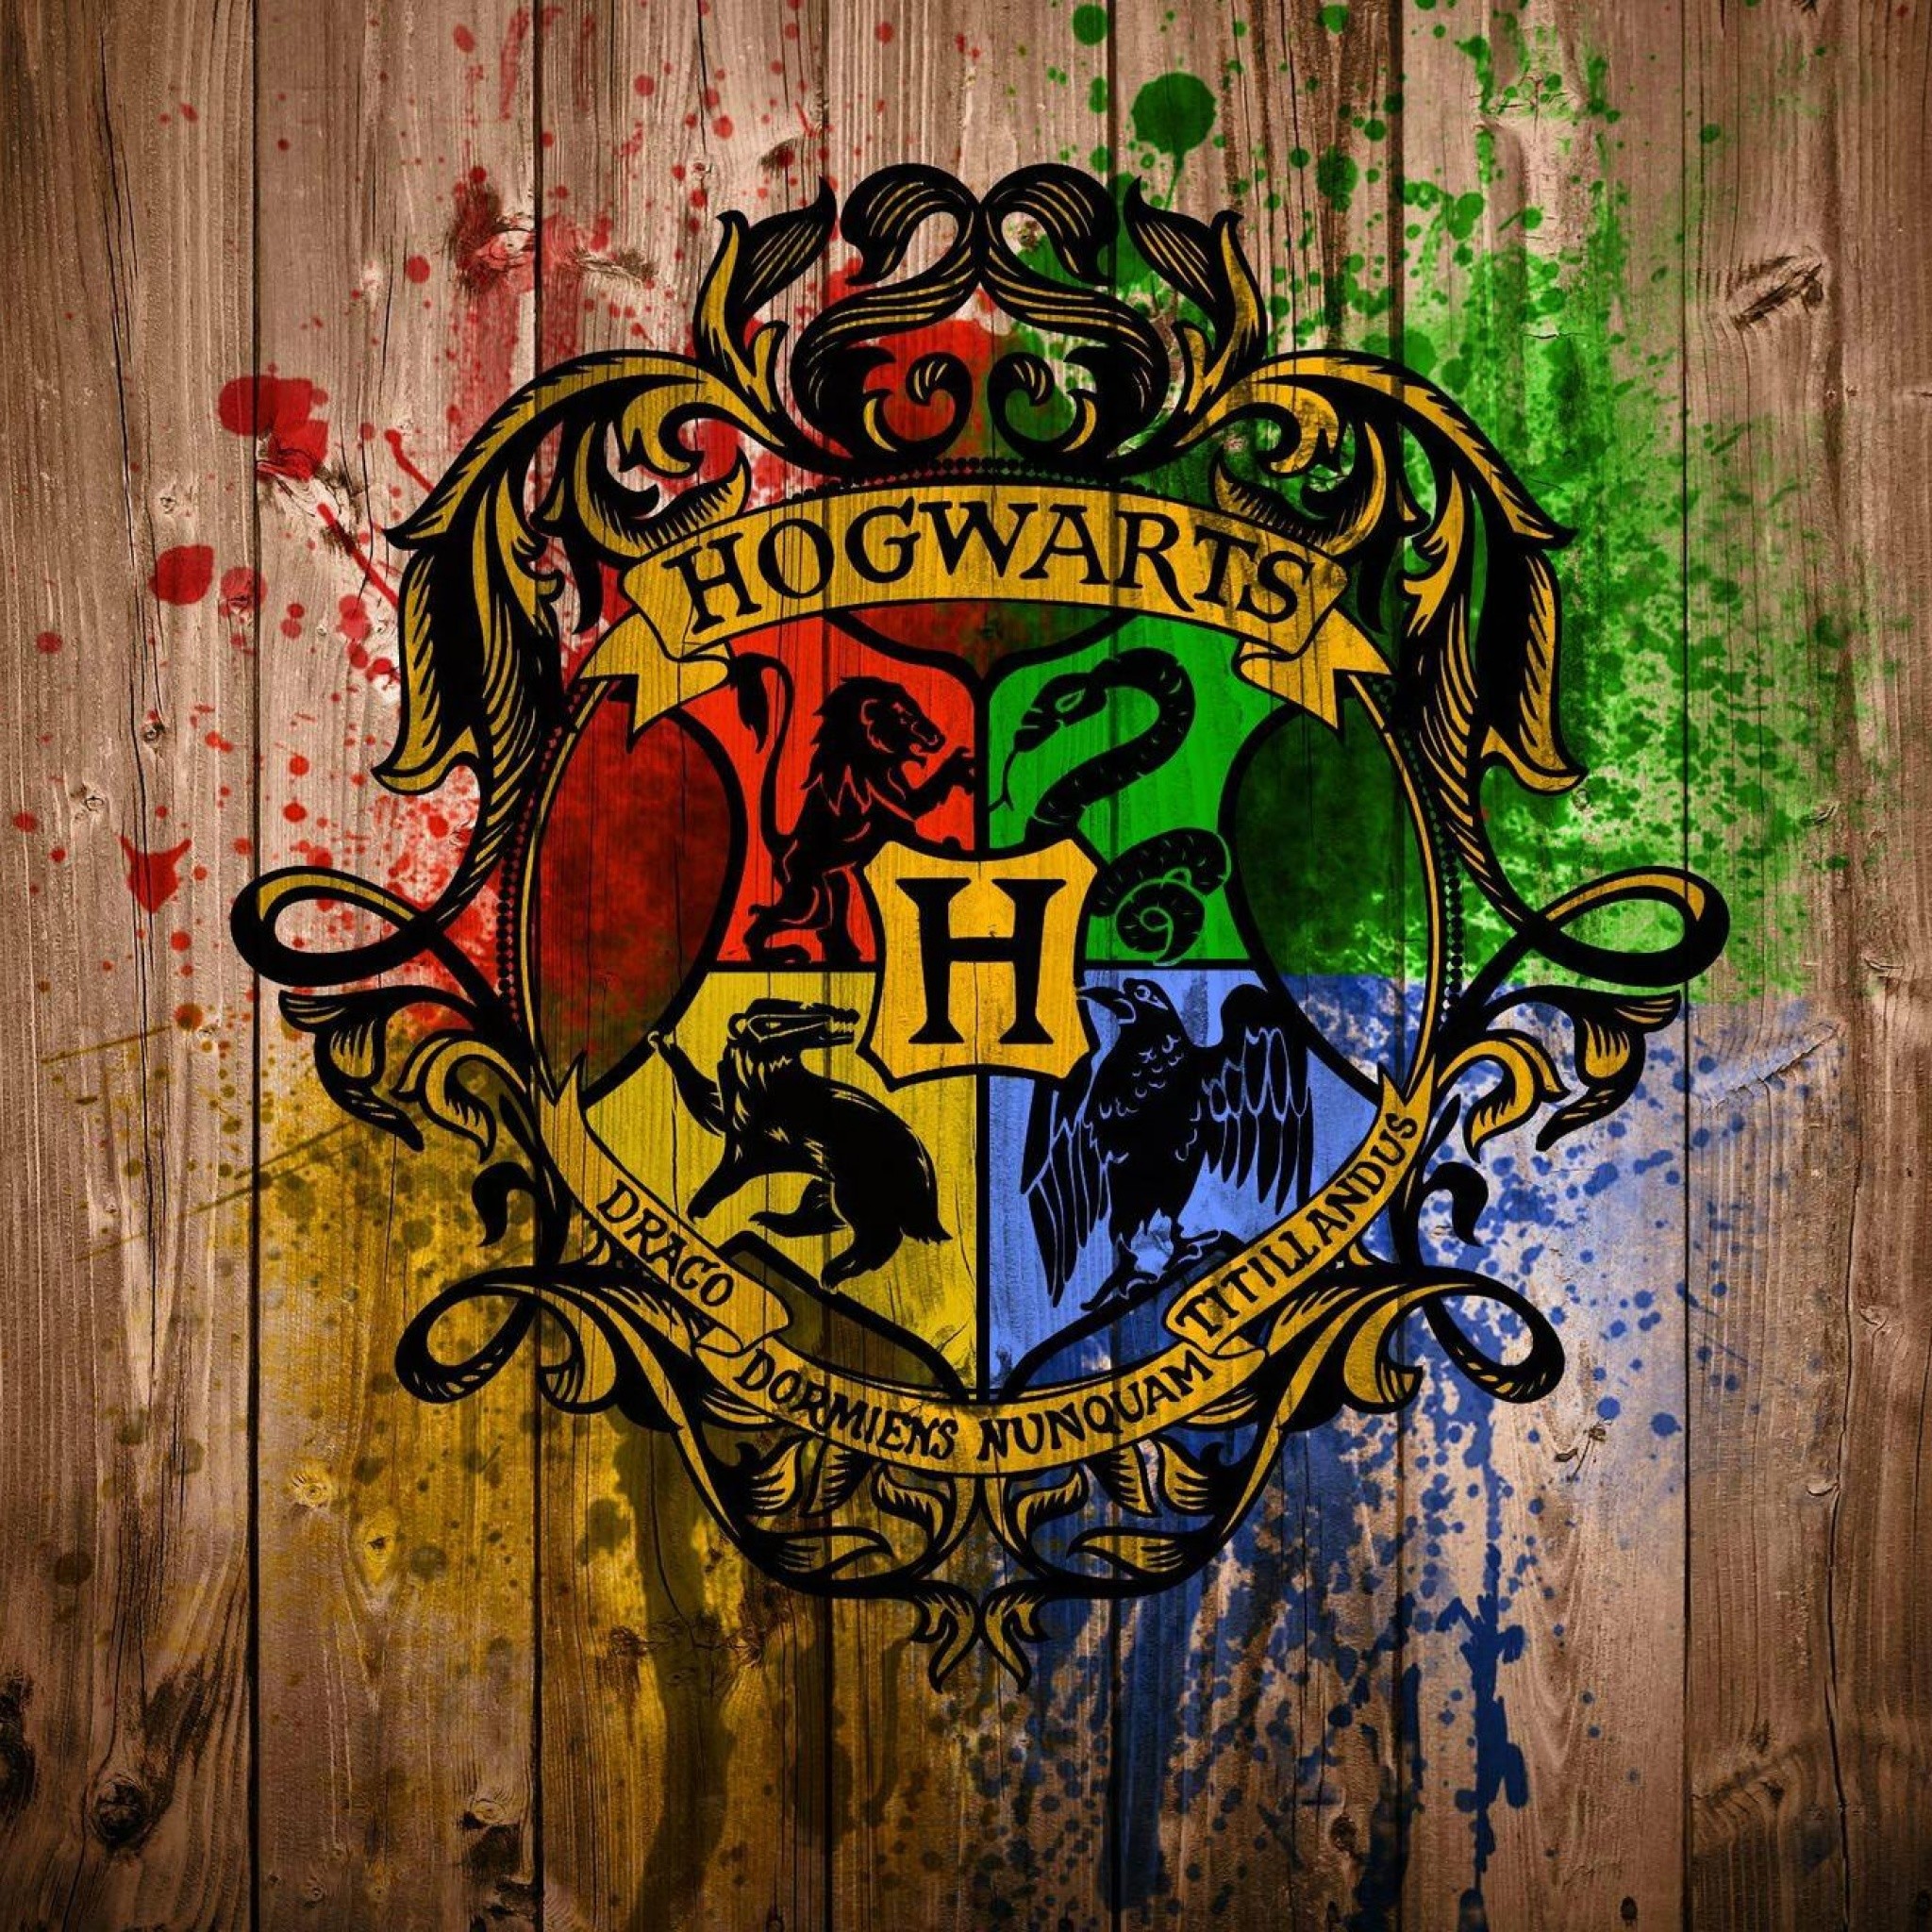 Hogwarts iphone wallpaper by SailorTrekkie92 on DeviantArt